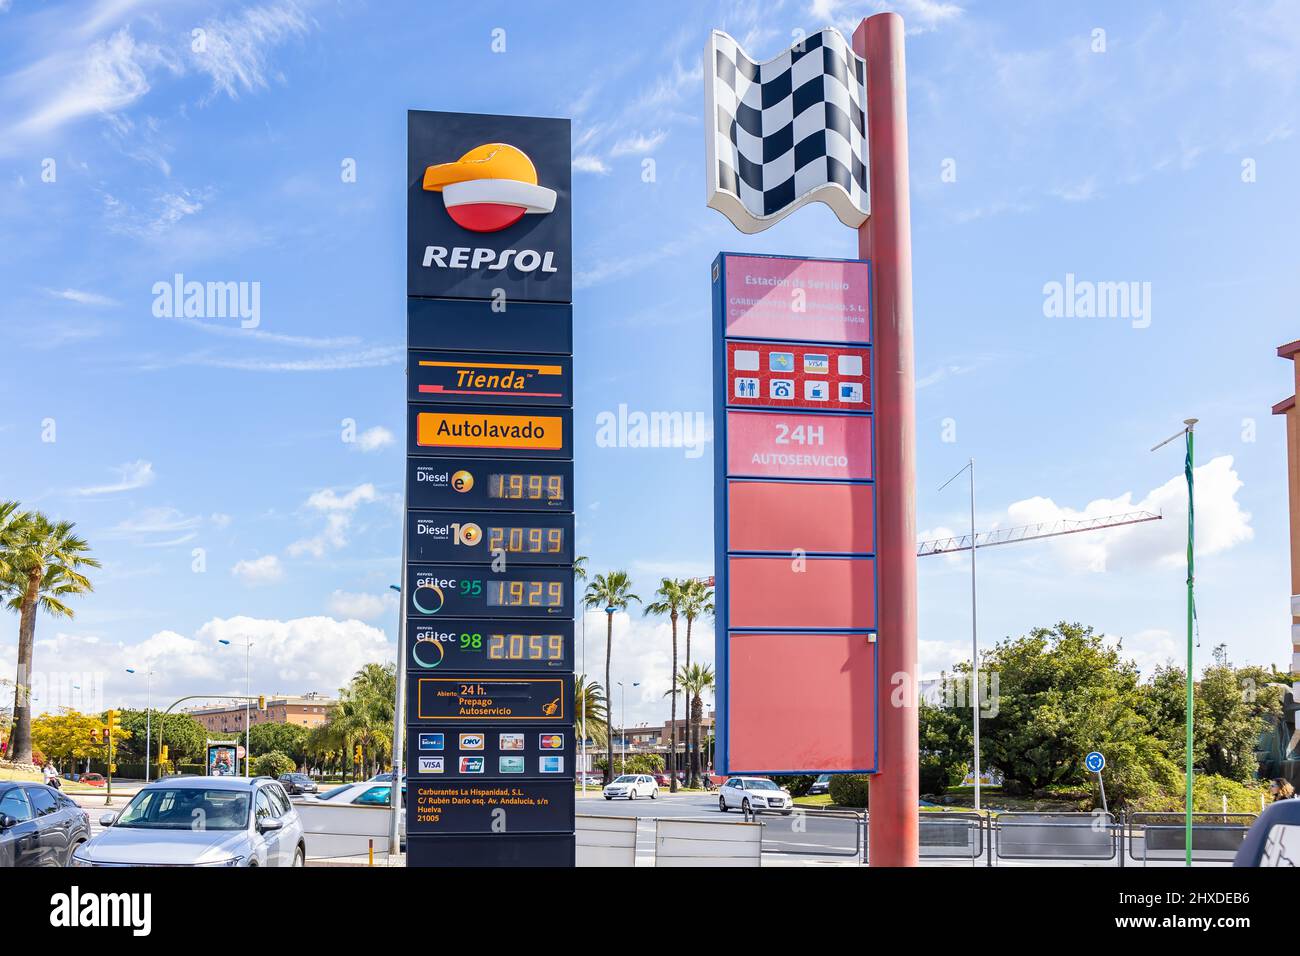 Huelva, Spanien - 6. März 2022: Anzeige mit Gaspreisen, Diesel und  bleifreiem Benzin, an der Repsol Tankstelle Stockfotografie - Alamy